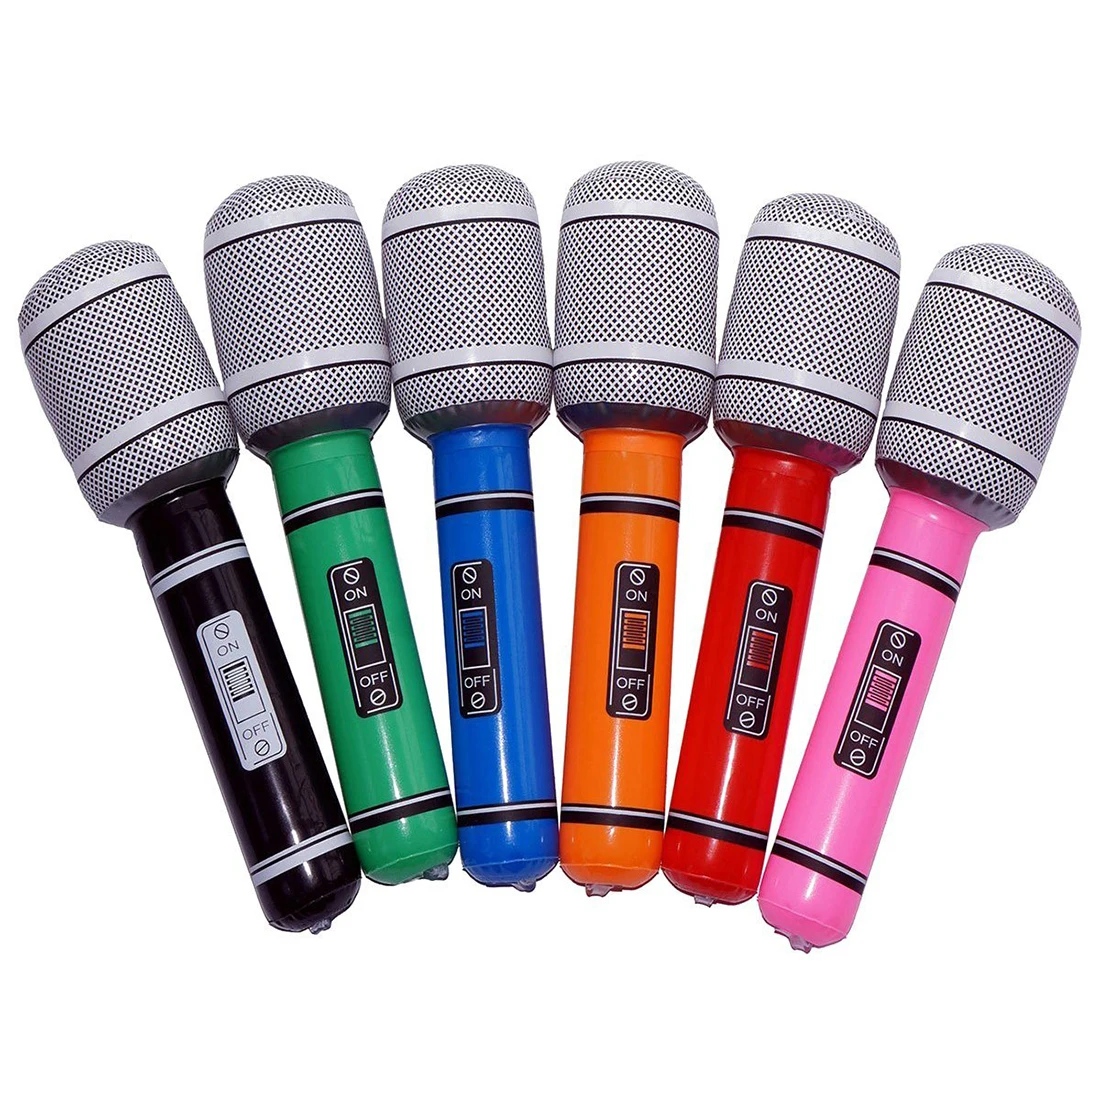 Надувные пластиковый микрофон 24 см вечерние партии пользу детей игрушка подарок-6 шт. (случайный цвет)